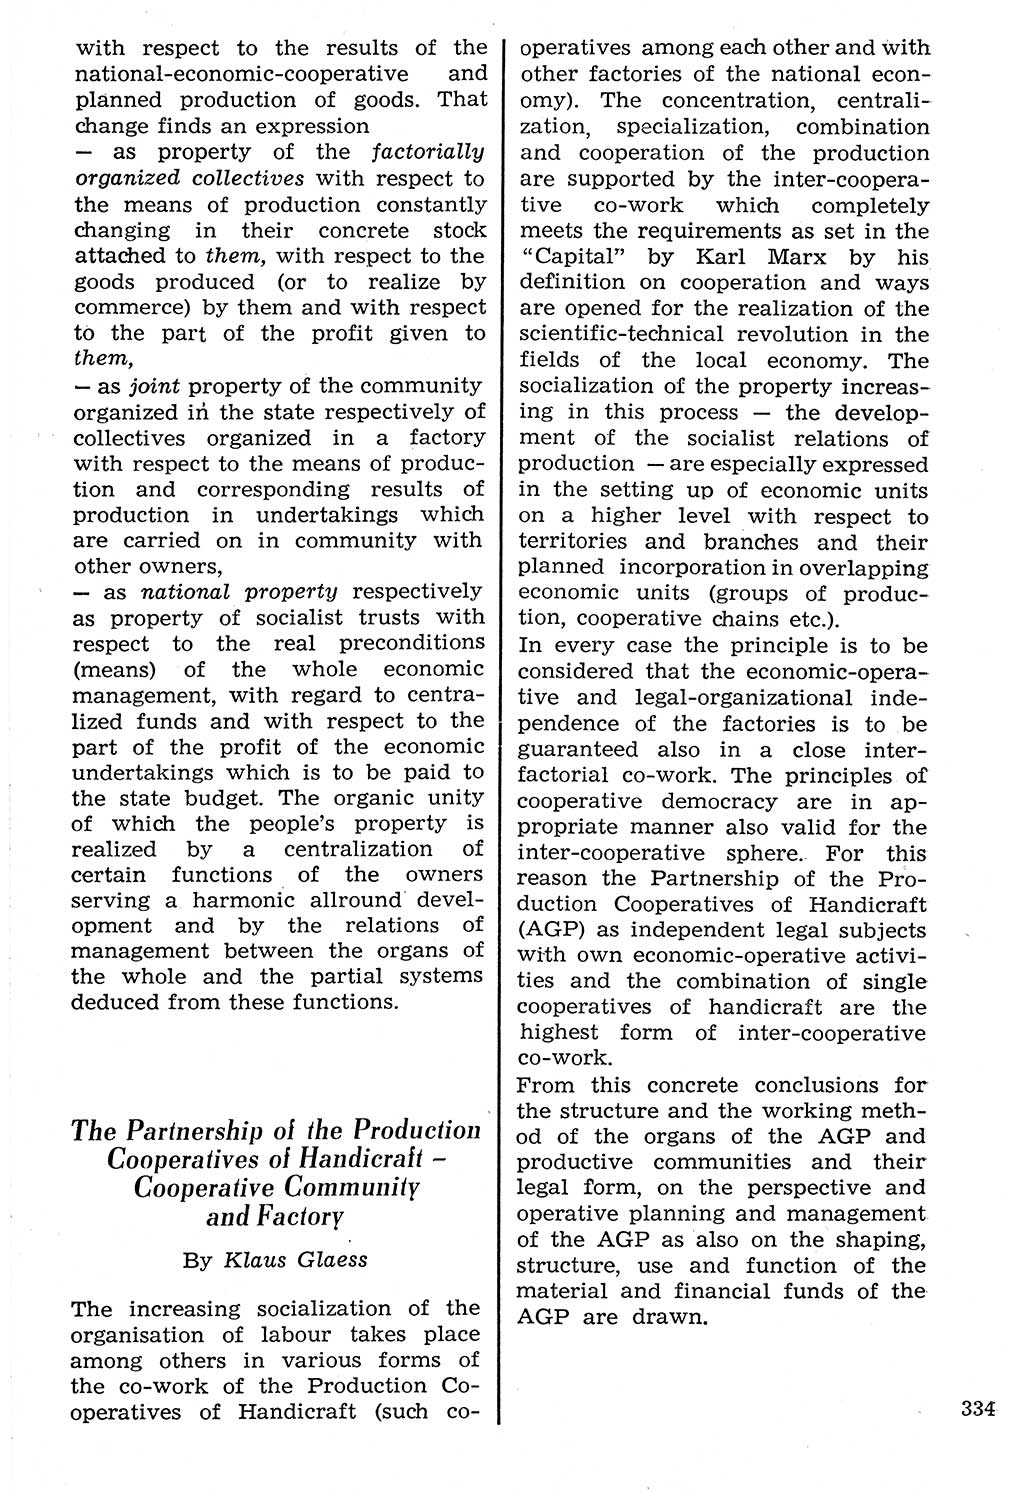 Staat und Recht (StuR), 17. Jahrgang [Deutsche Demokratische Republik (DDR)] 1968, Seite 334 (StuR DDR 1968, S. 334)